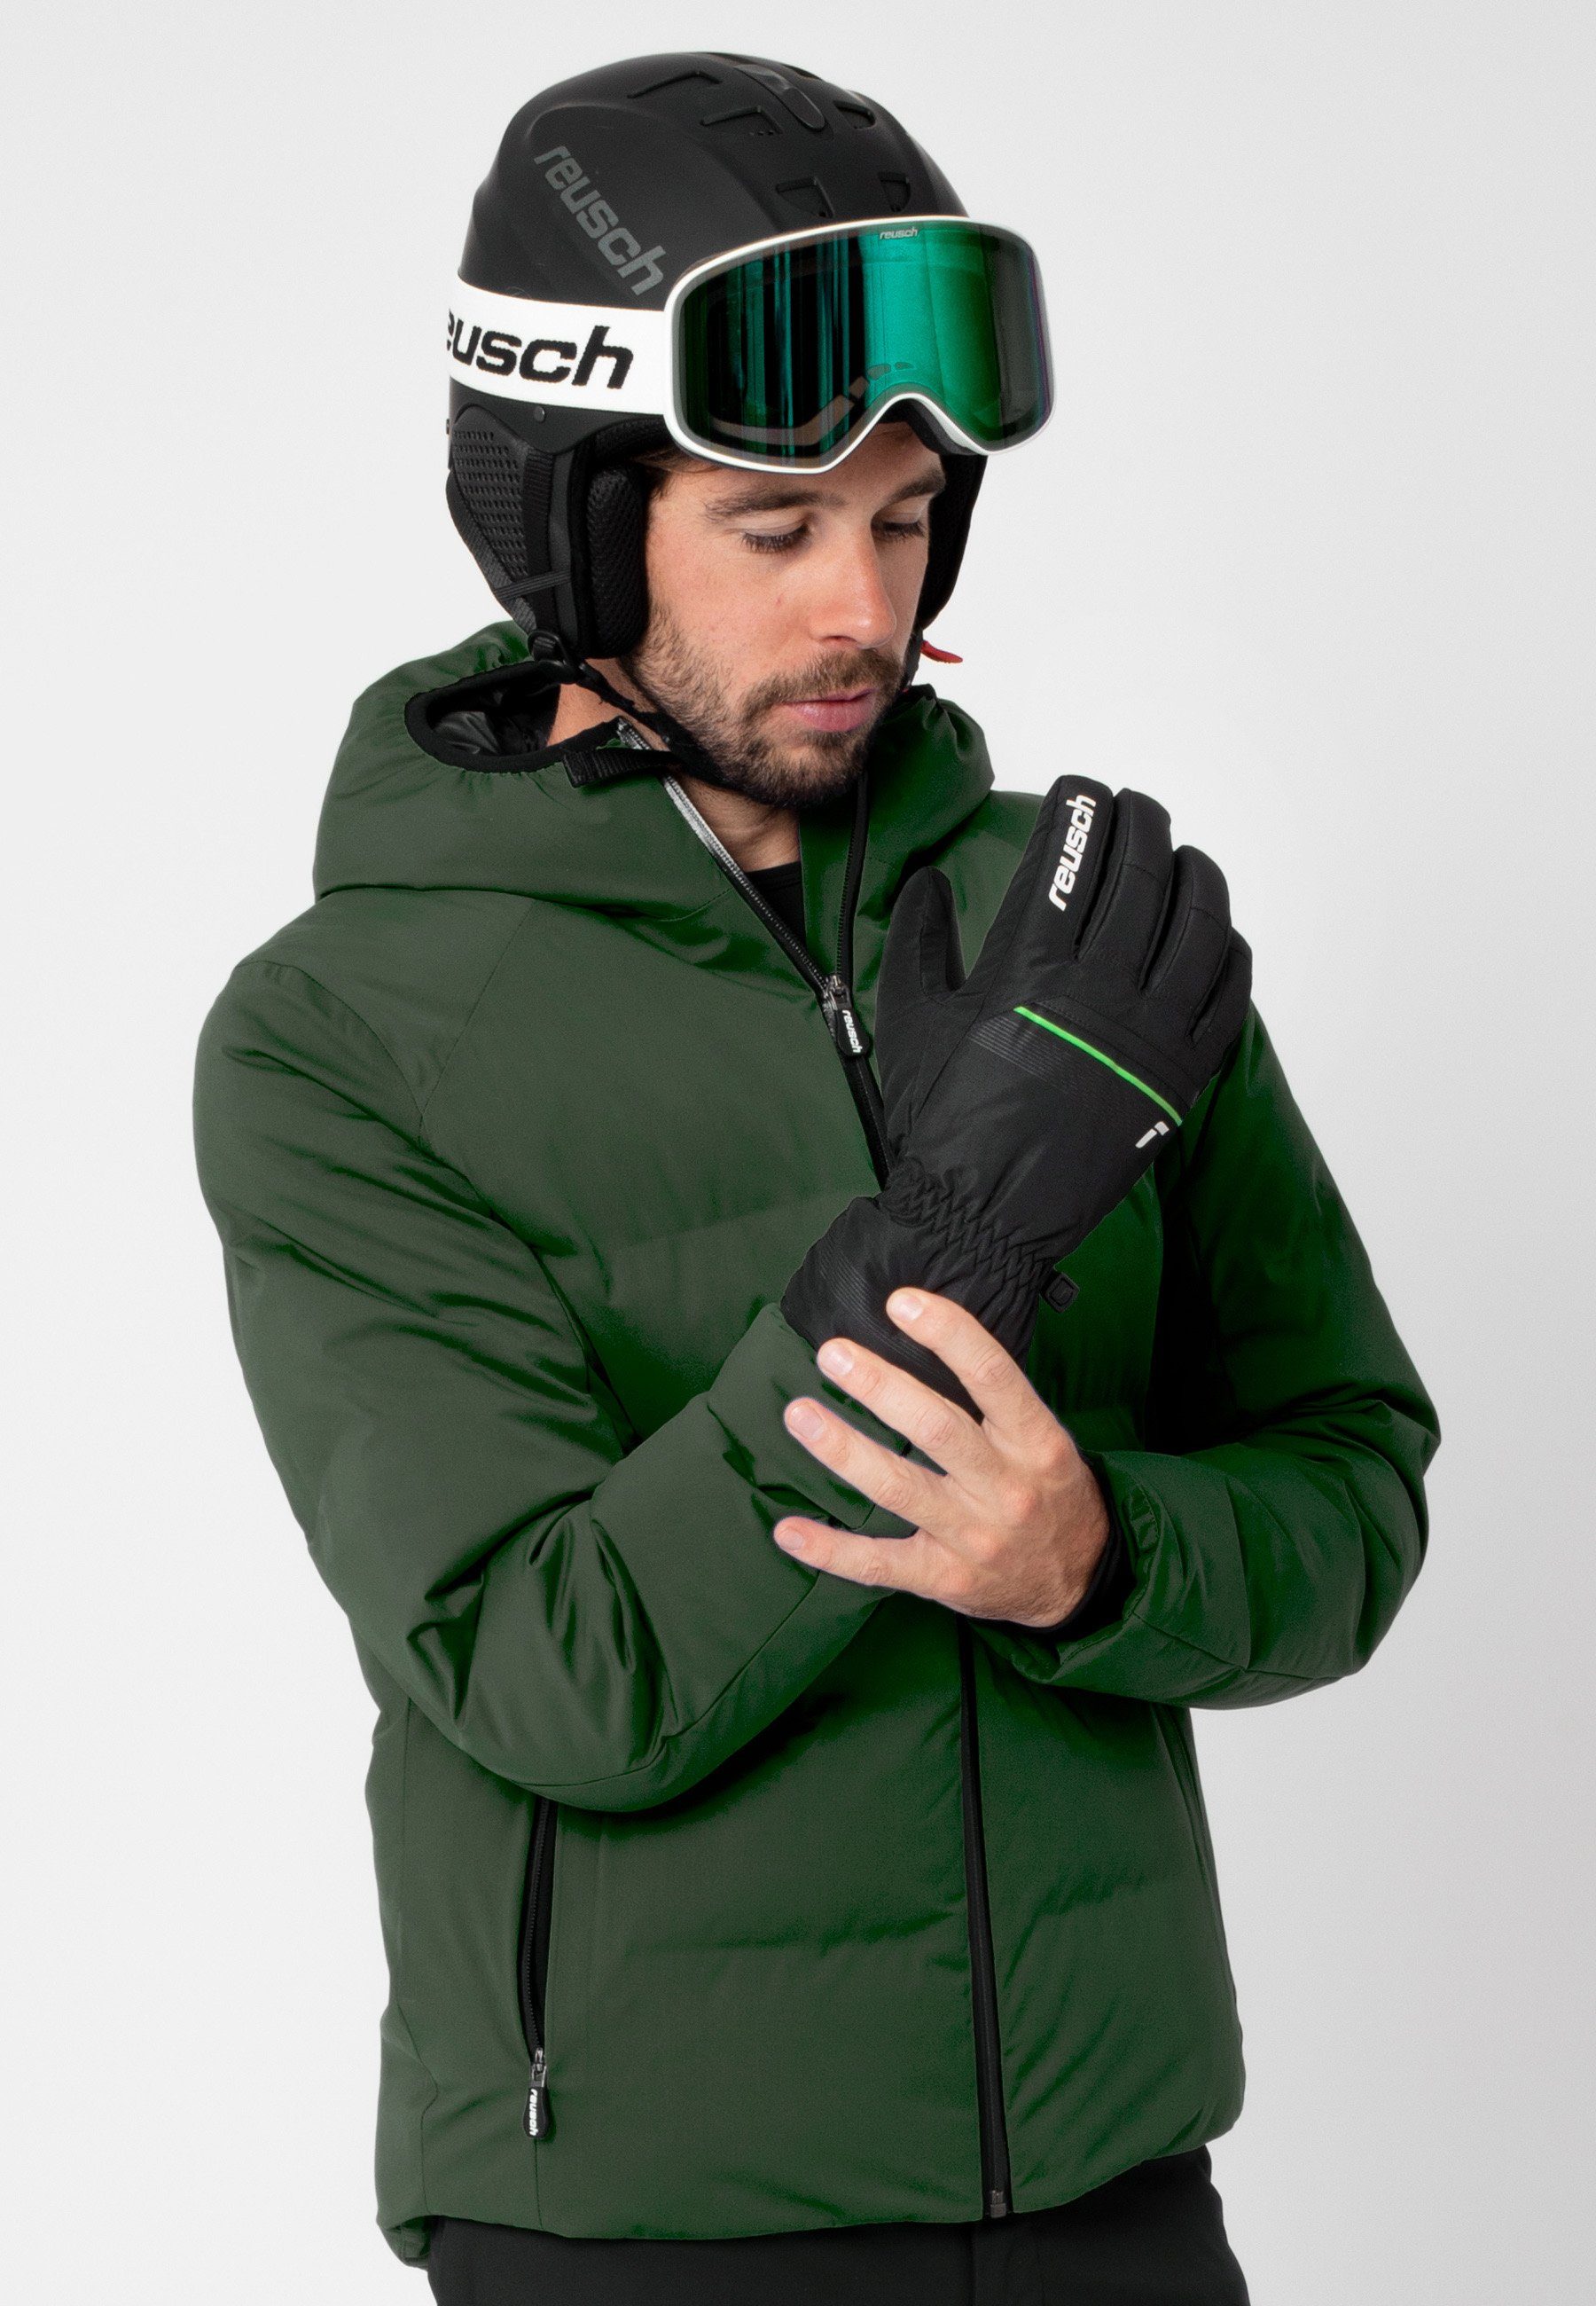 King atmungsaktivem Reusch Skihandschuhe Snow aus grün-schwarz Material